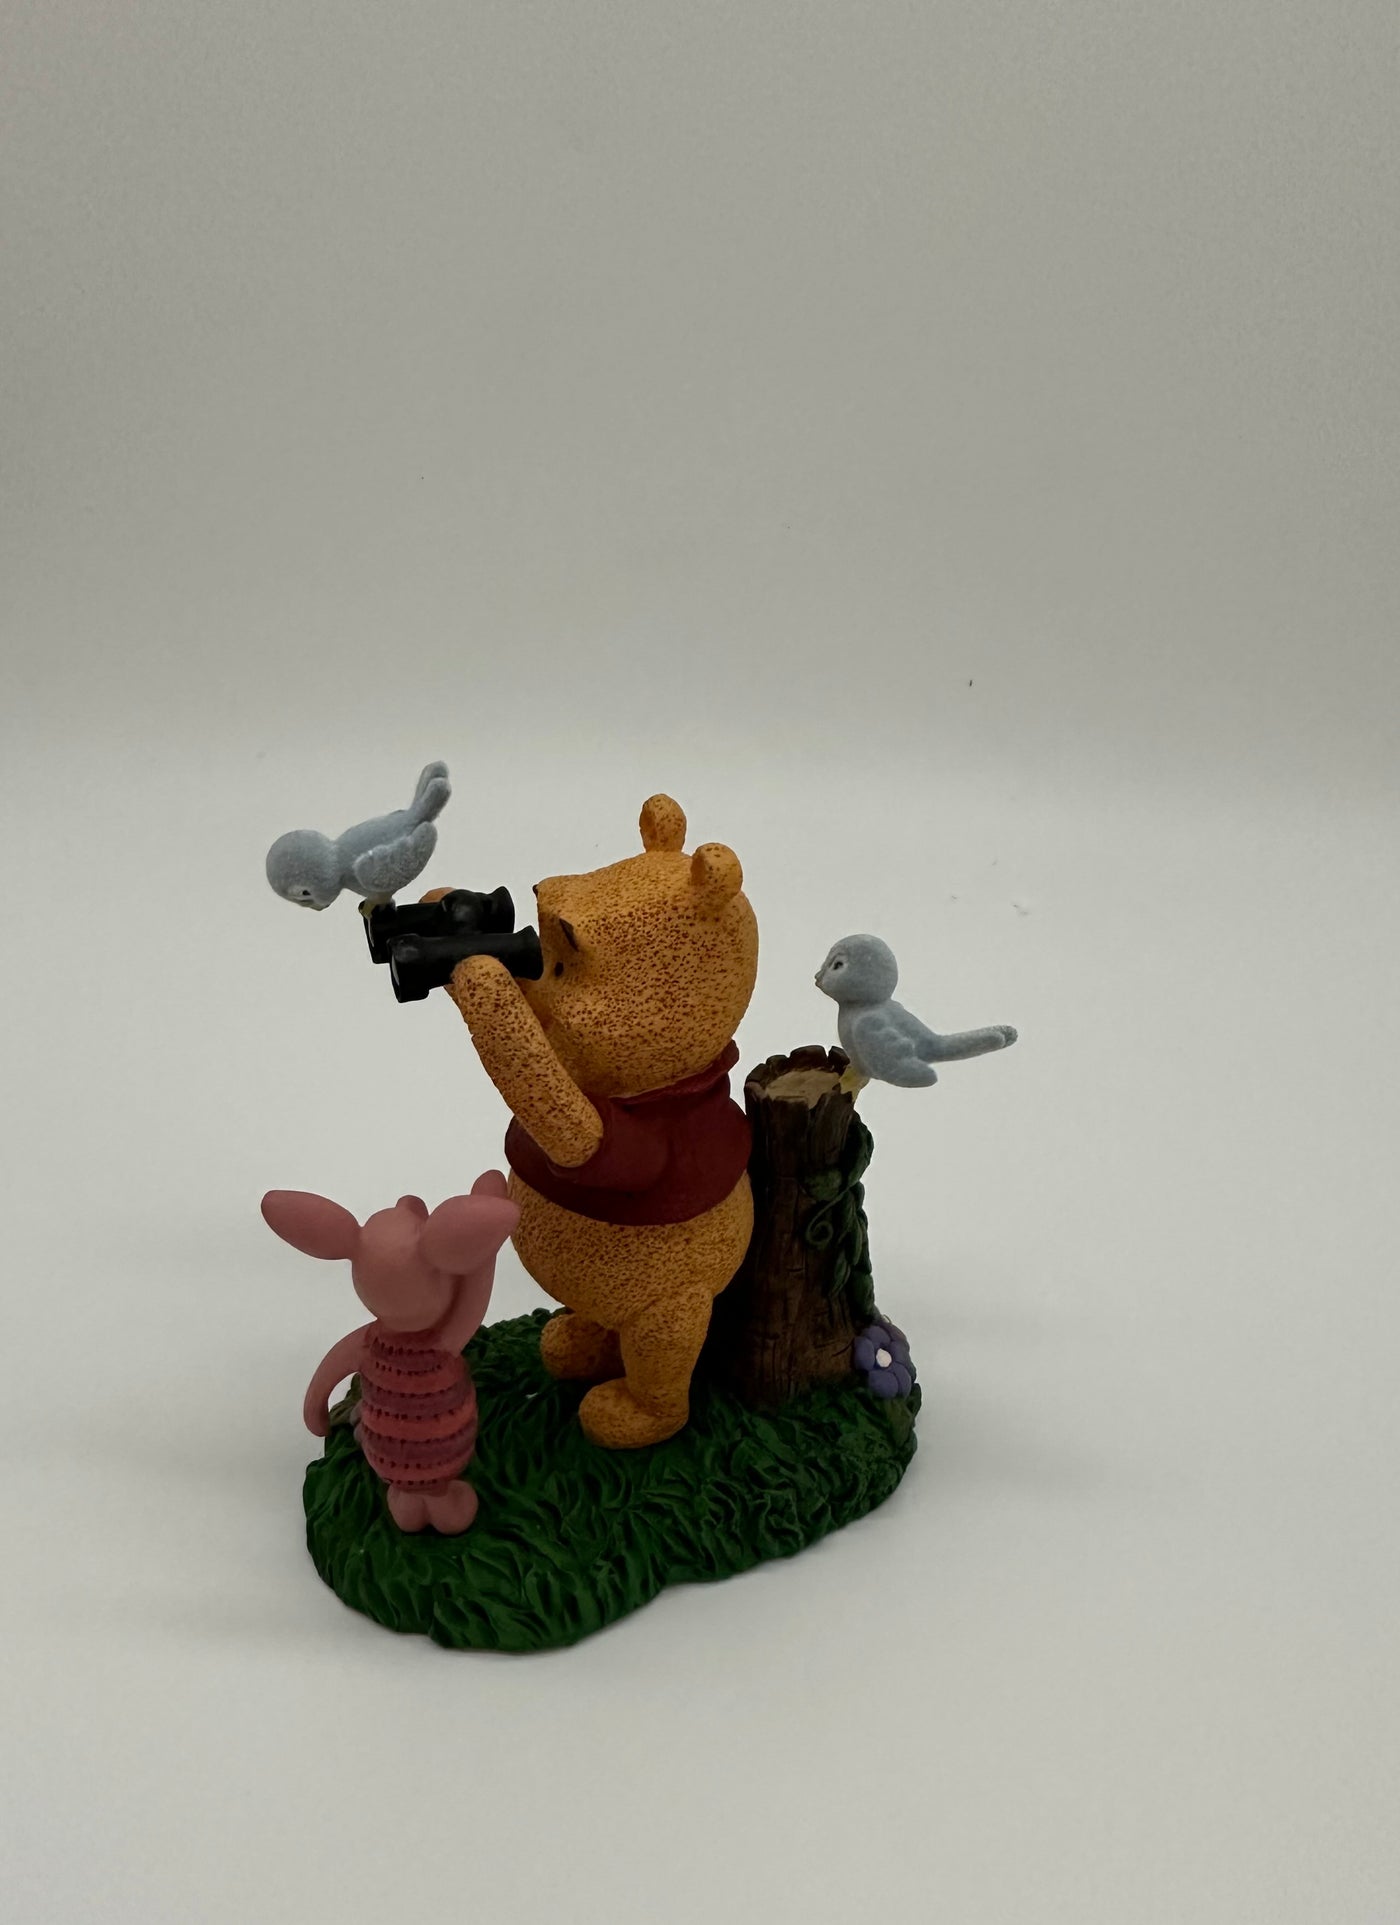 Disney Store Simply Pooh Winnie Piglet Binocular Figurine New with Box